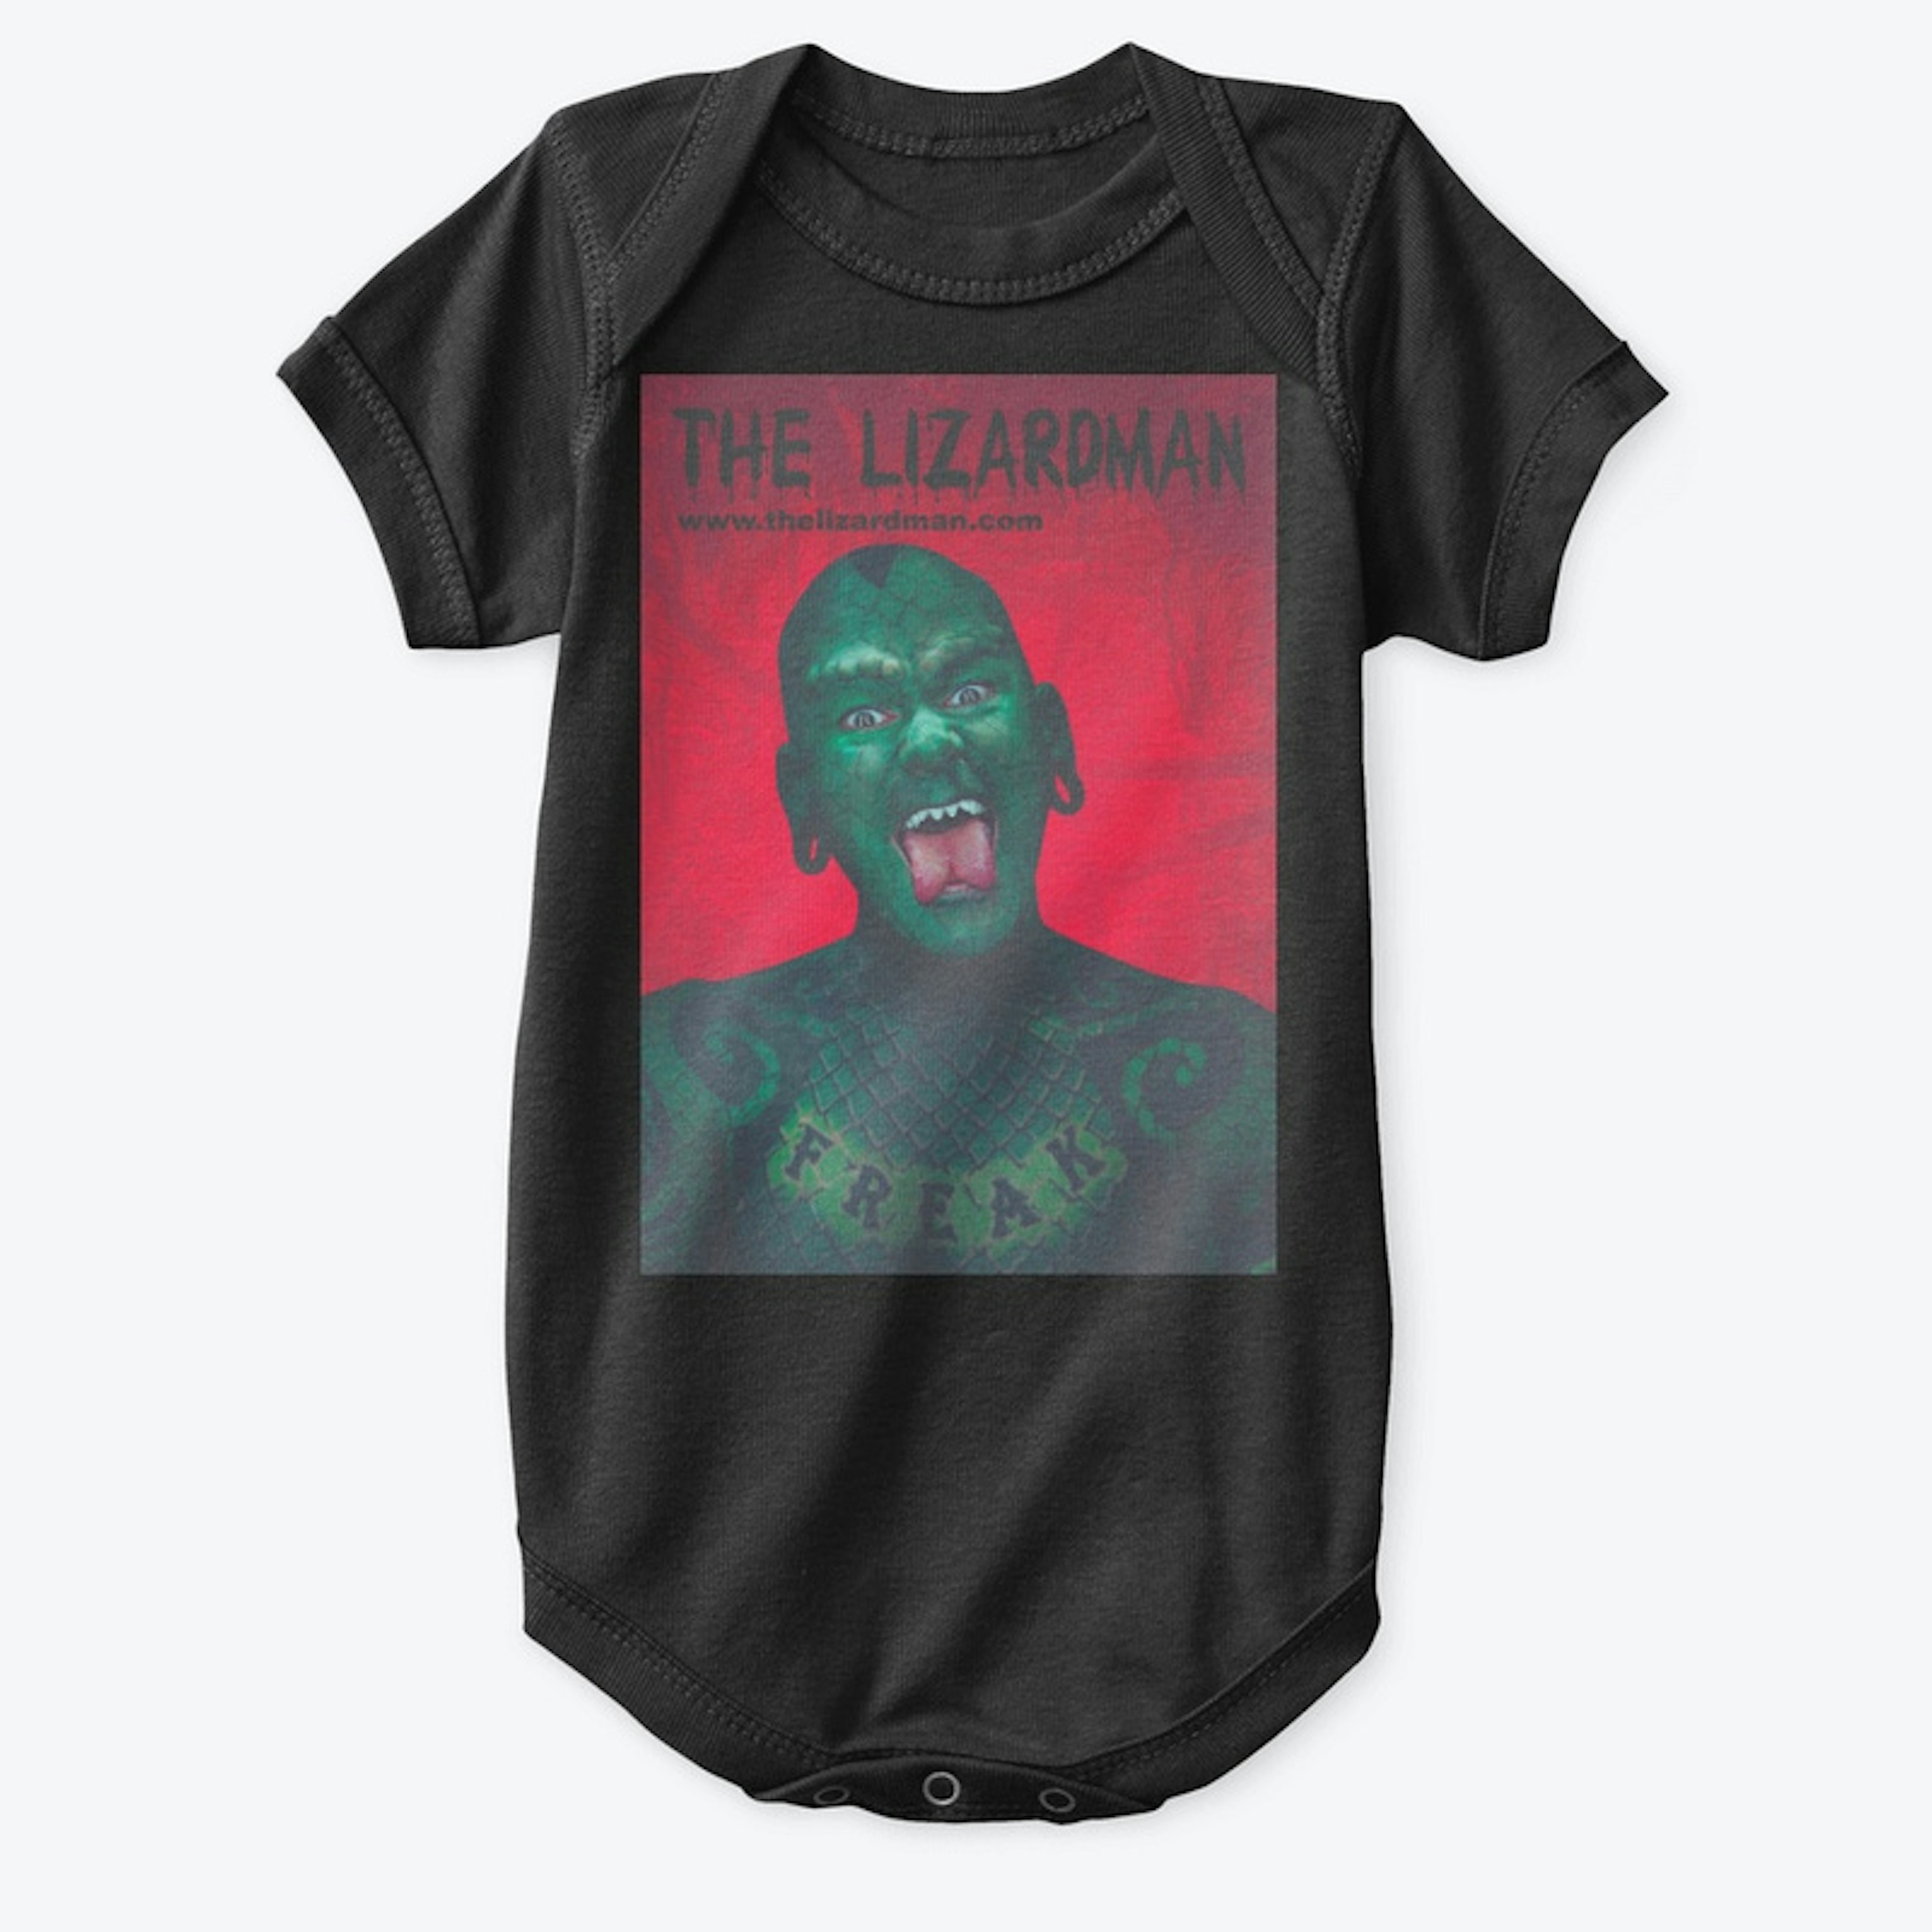 The Lizardman